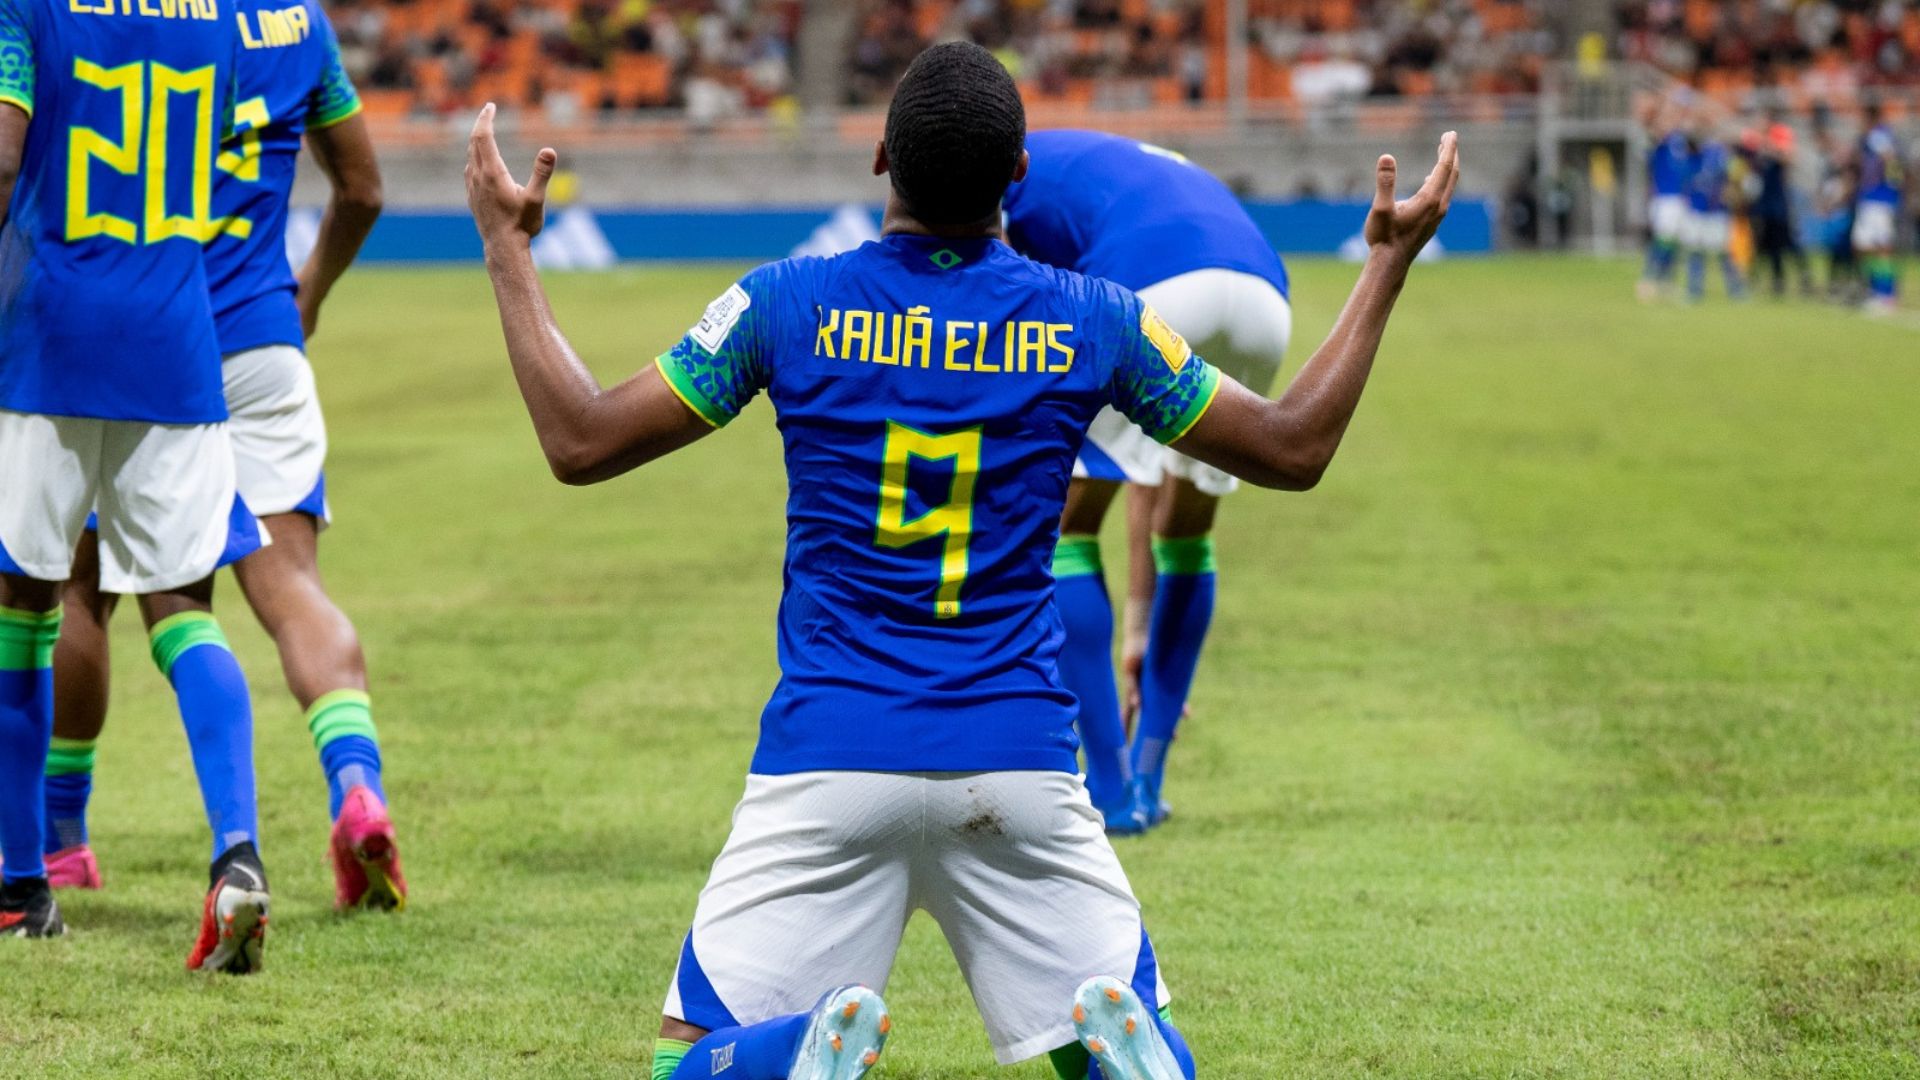 Kauã Elias em ação pela Seleção Brasileira sub-17 (Crédito: Leto Ribas / CBF)